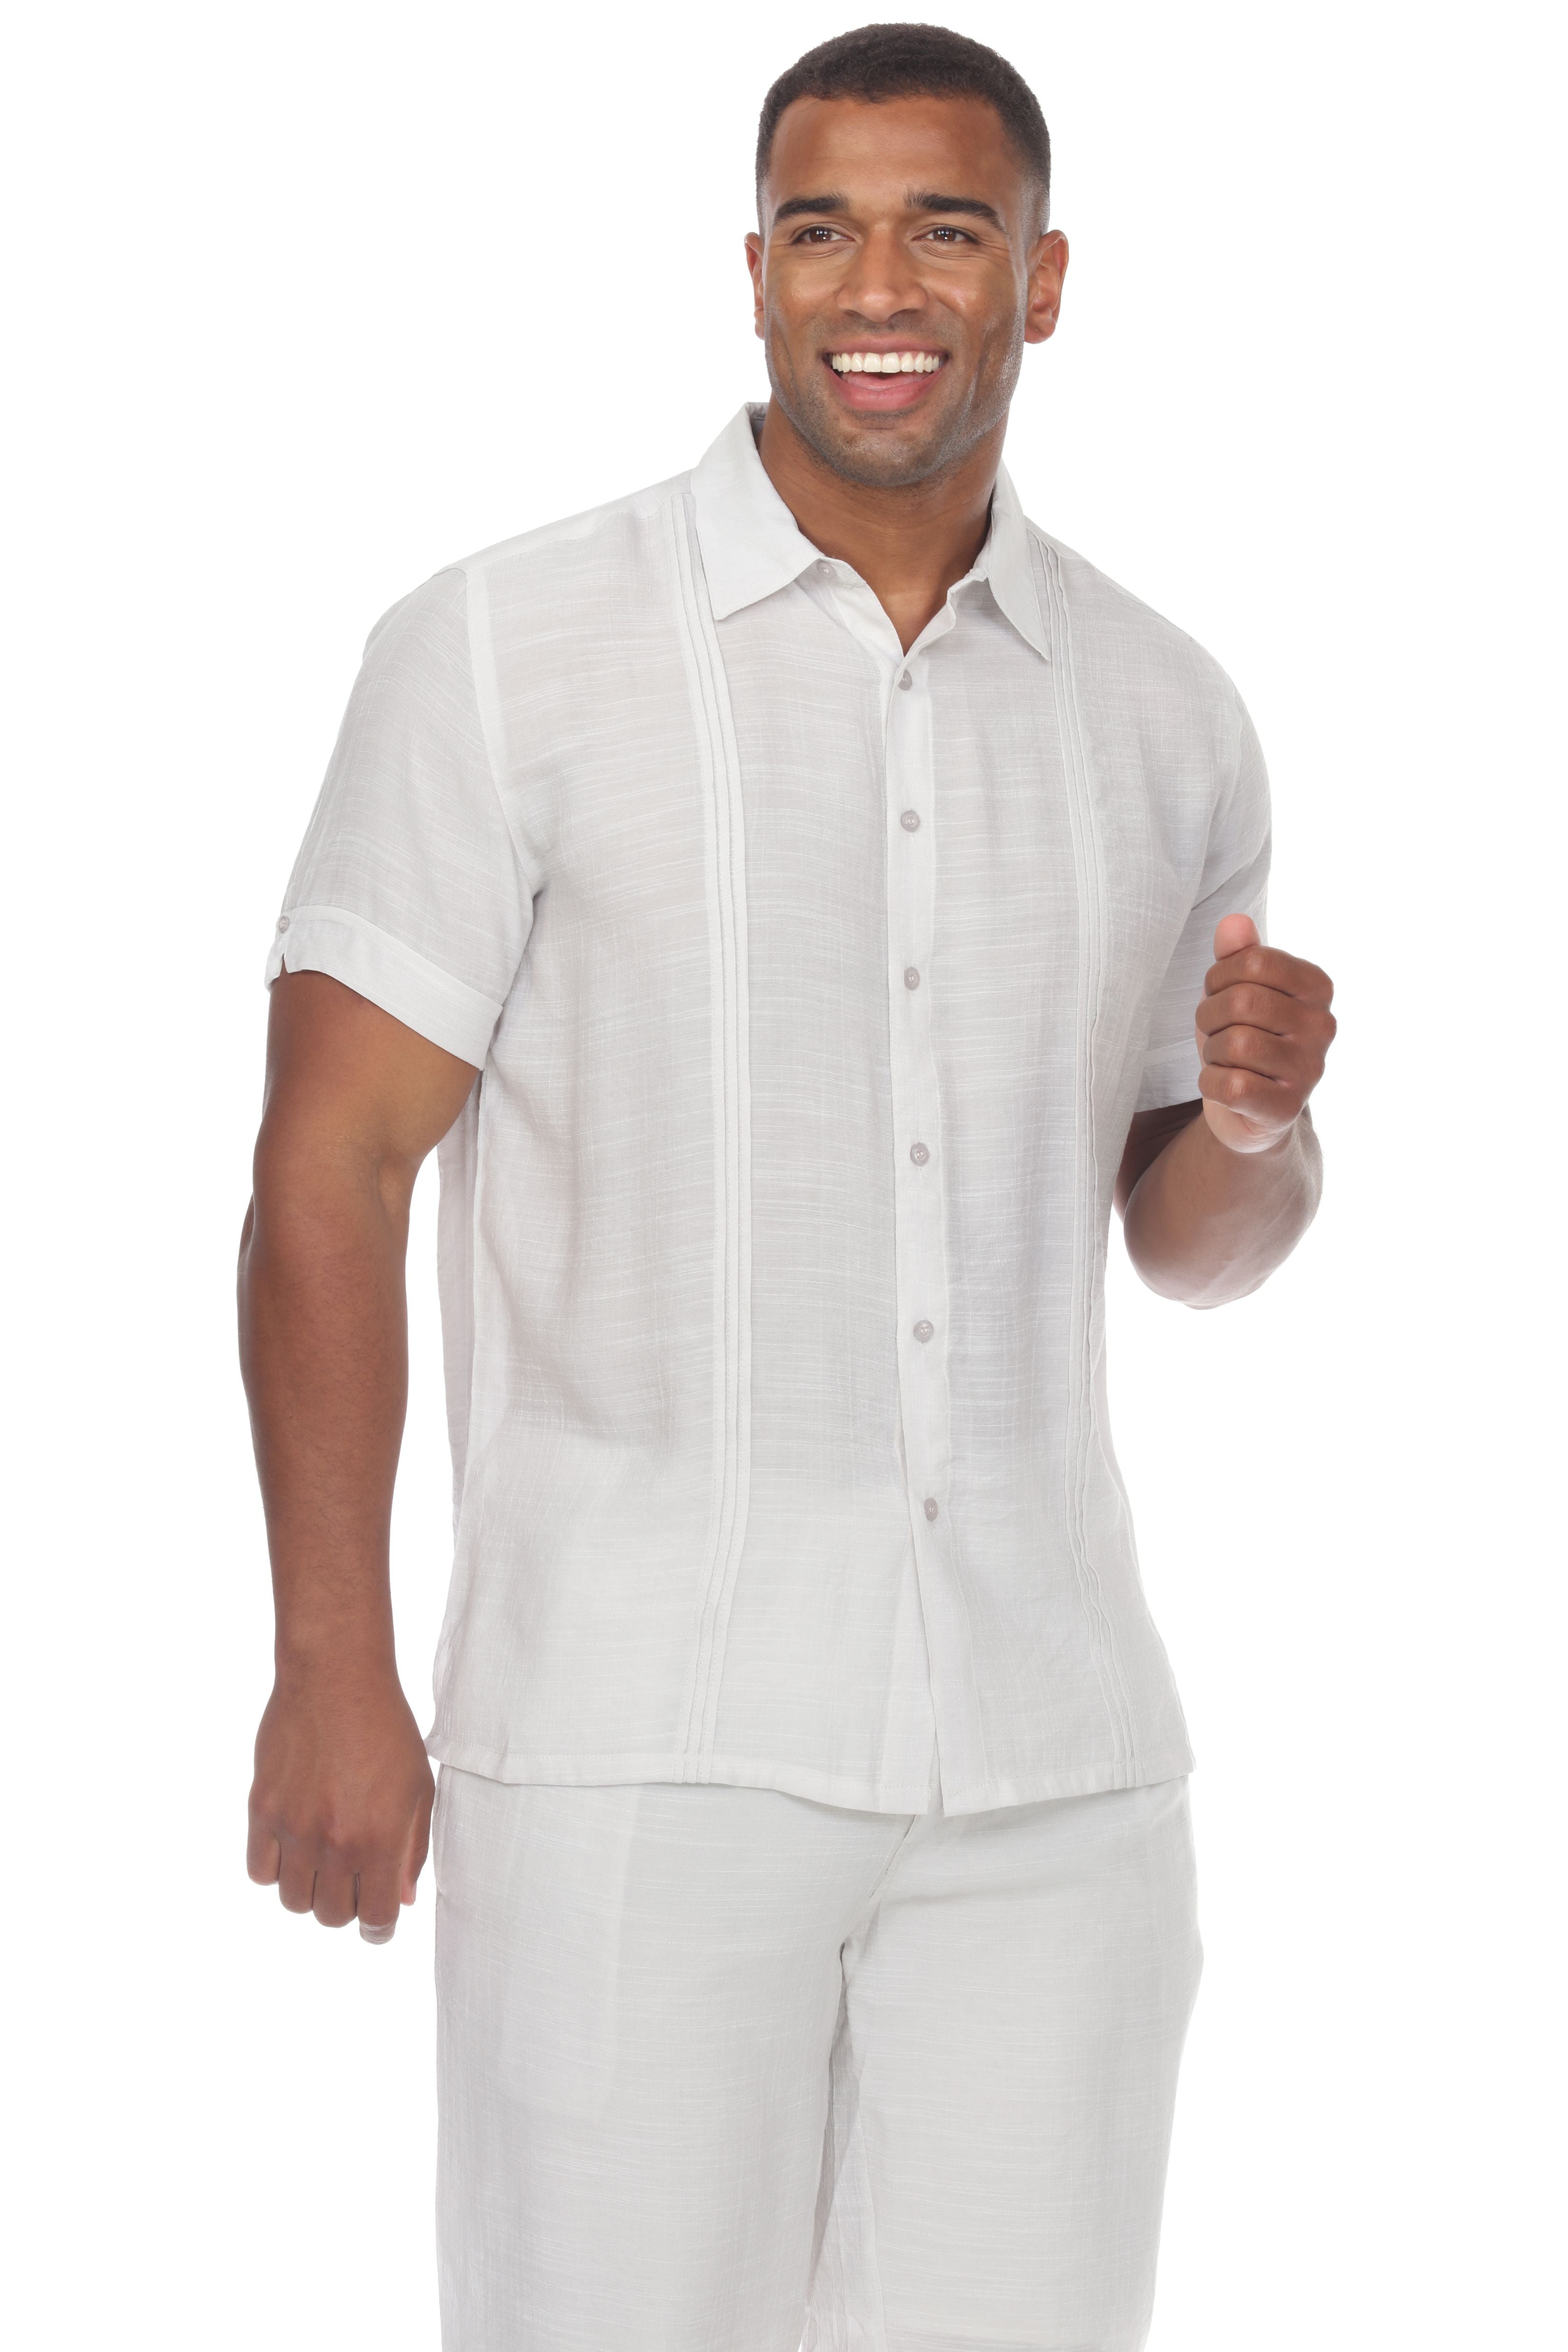 Men's Button Down Beachwear Short Sleeve Shirt - Mojito Collection - Beachwear Shirt, Mens Shirt, Resortwear, Short Sleeve Shirt